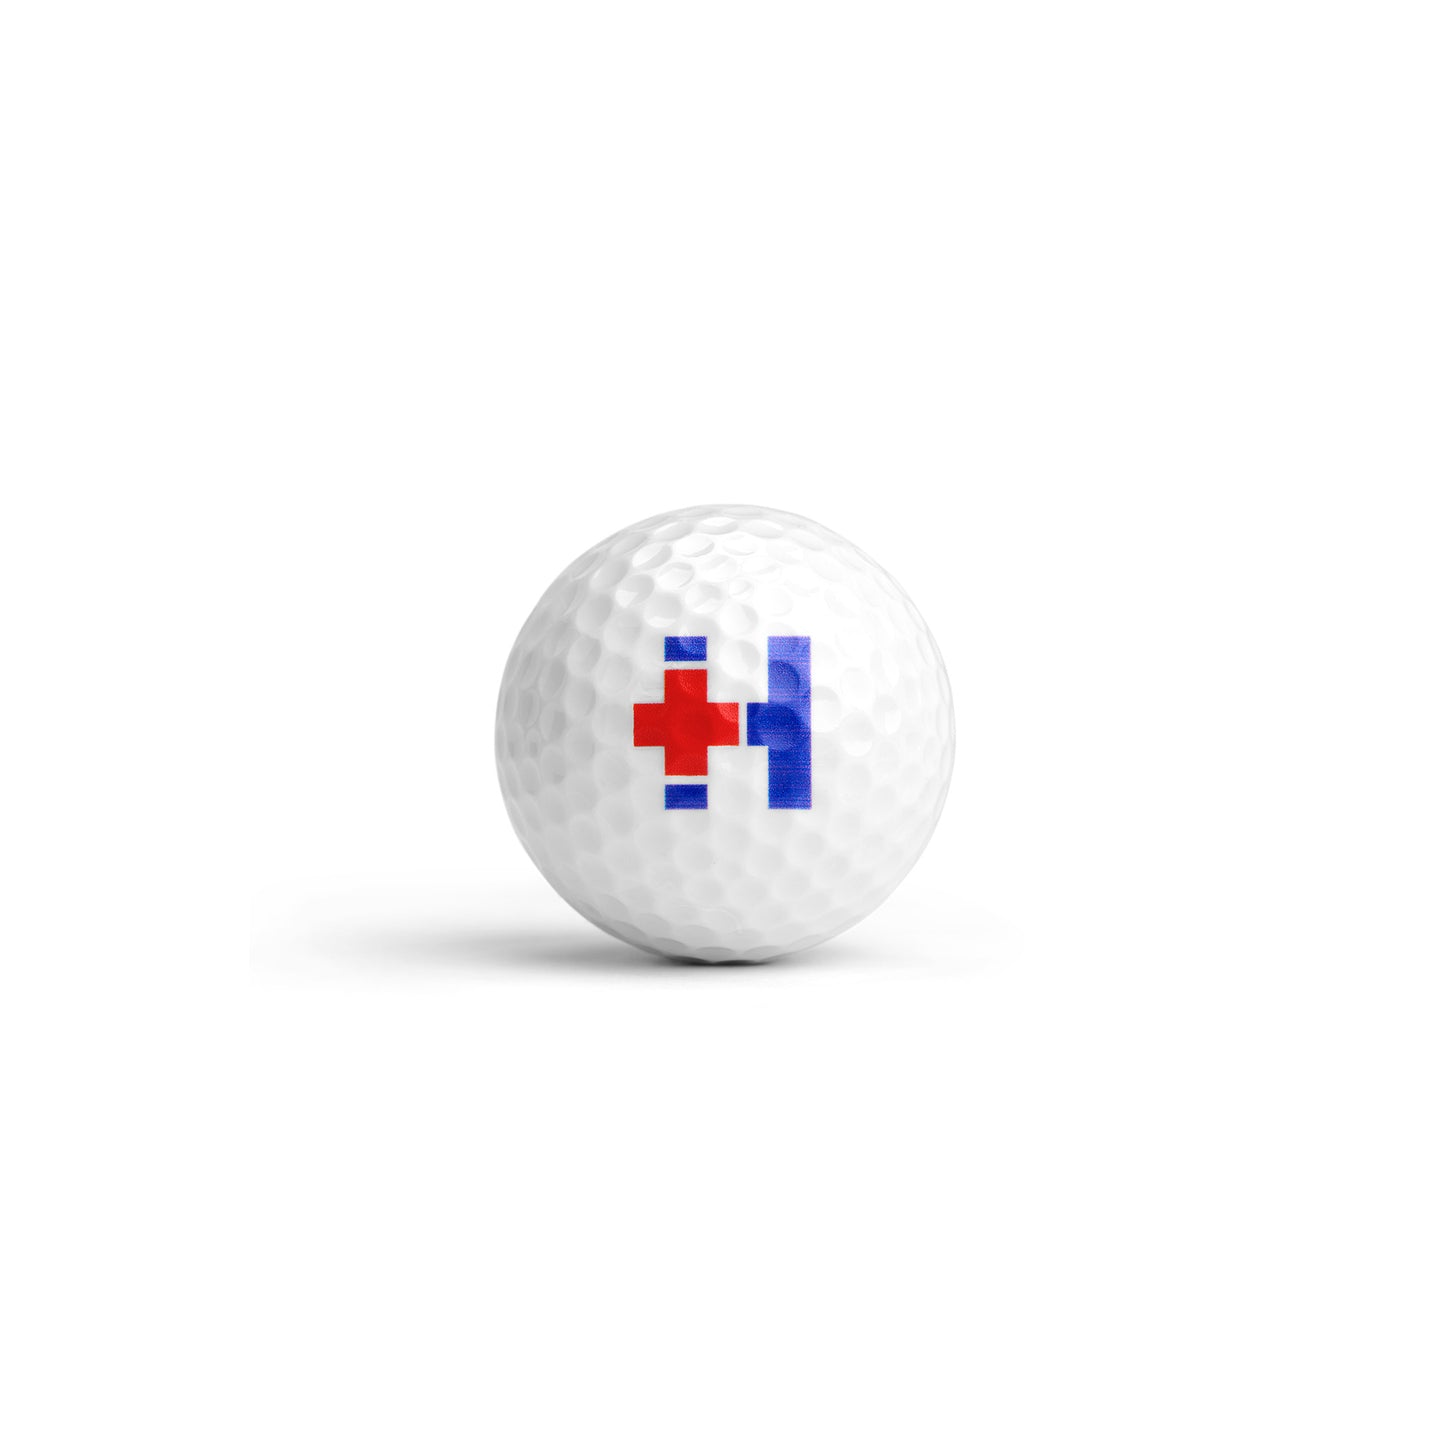 Hospitalogy Golf Balls